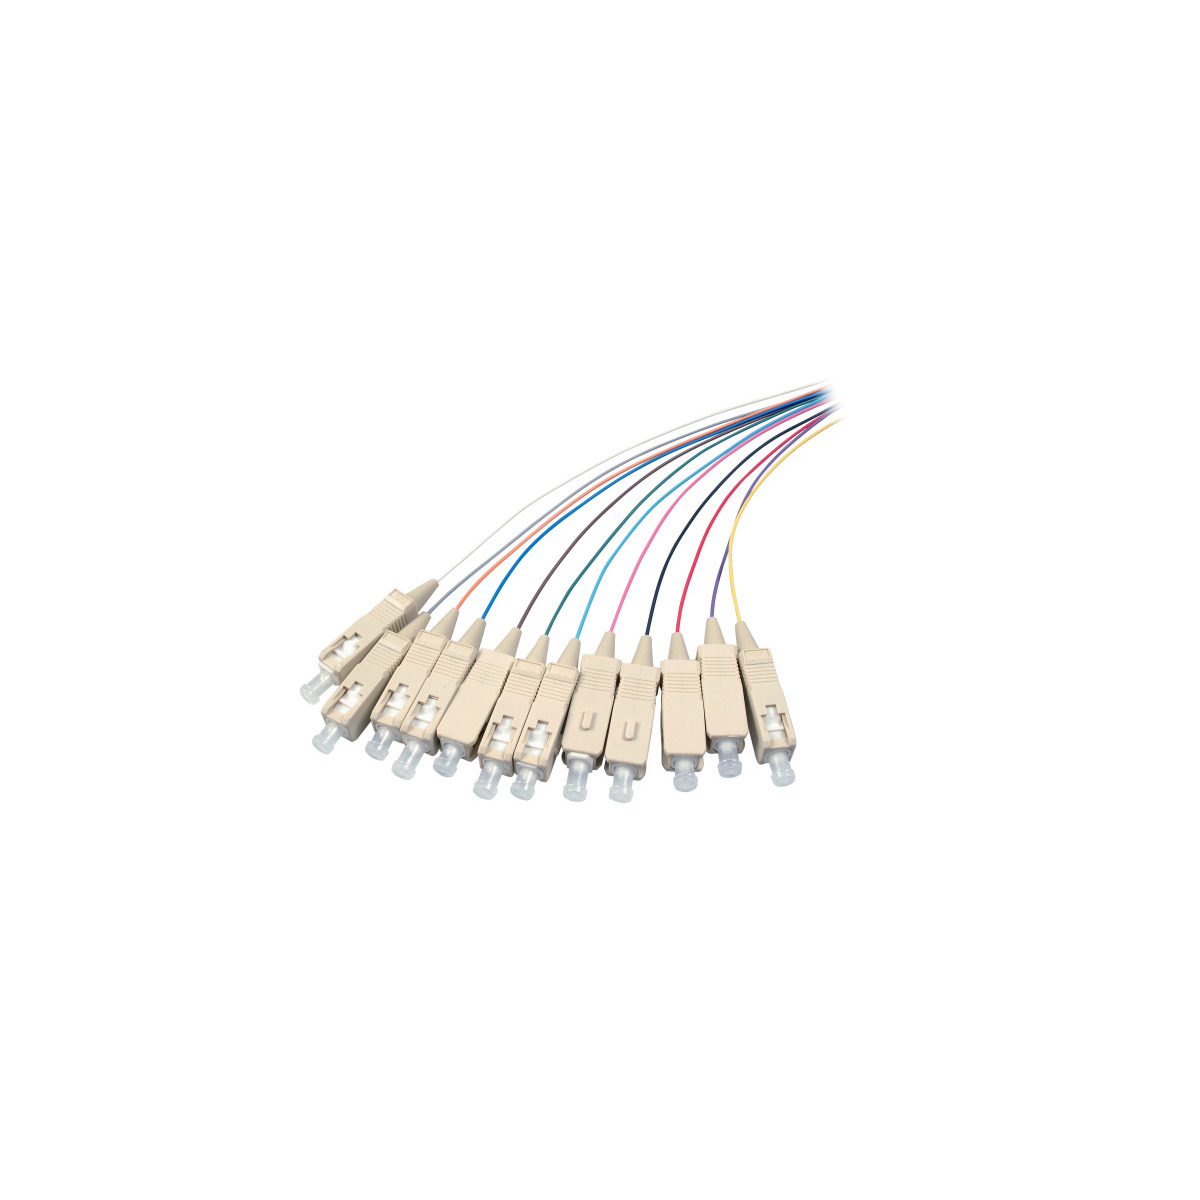 COMMUNIK Kabel Pigtails / SC Faserpigtails, 2 Glasfaserkabel, m